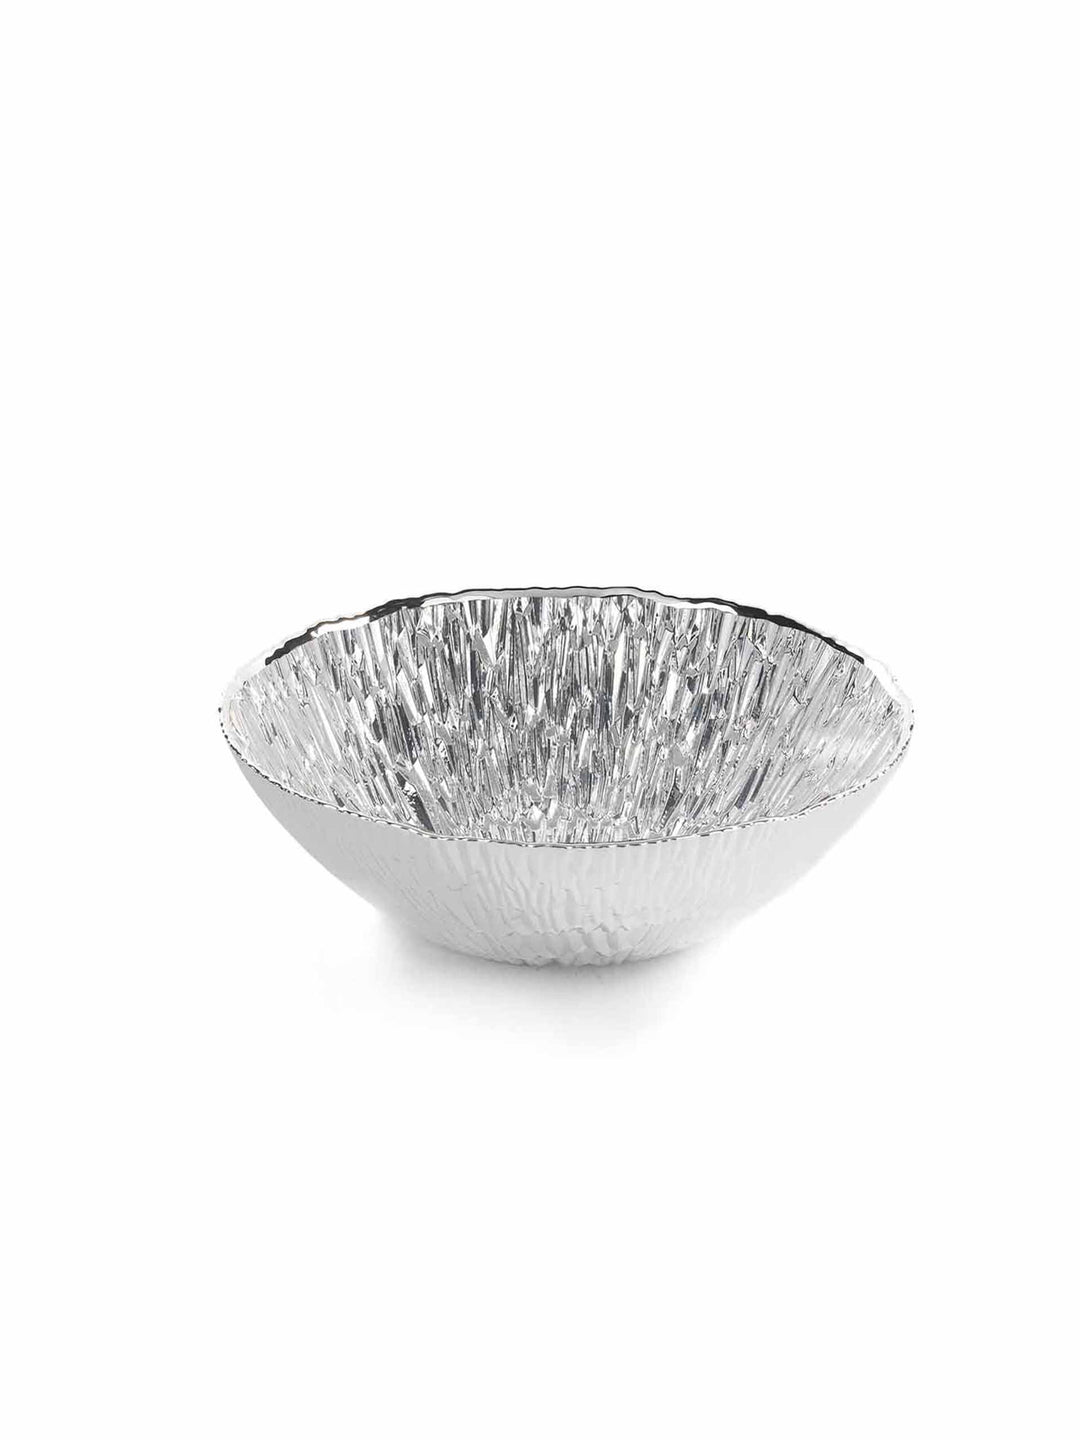 Argenesi Ducale bowl